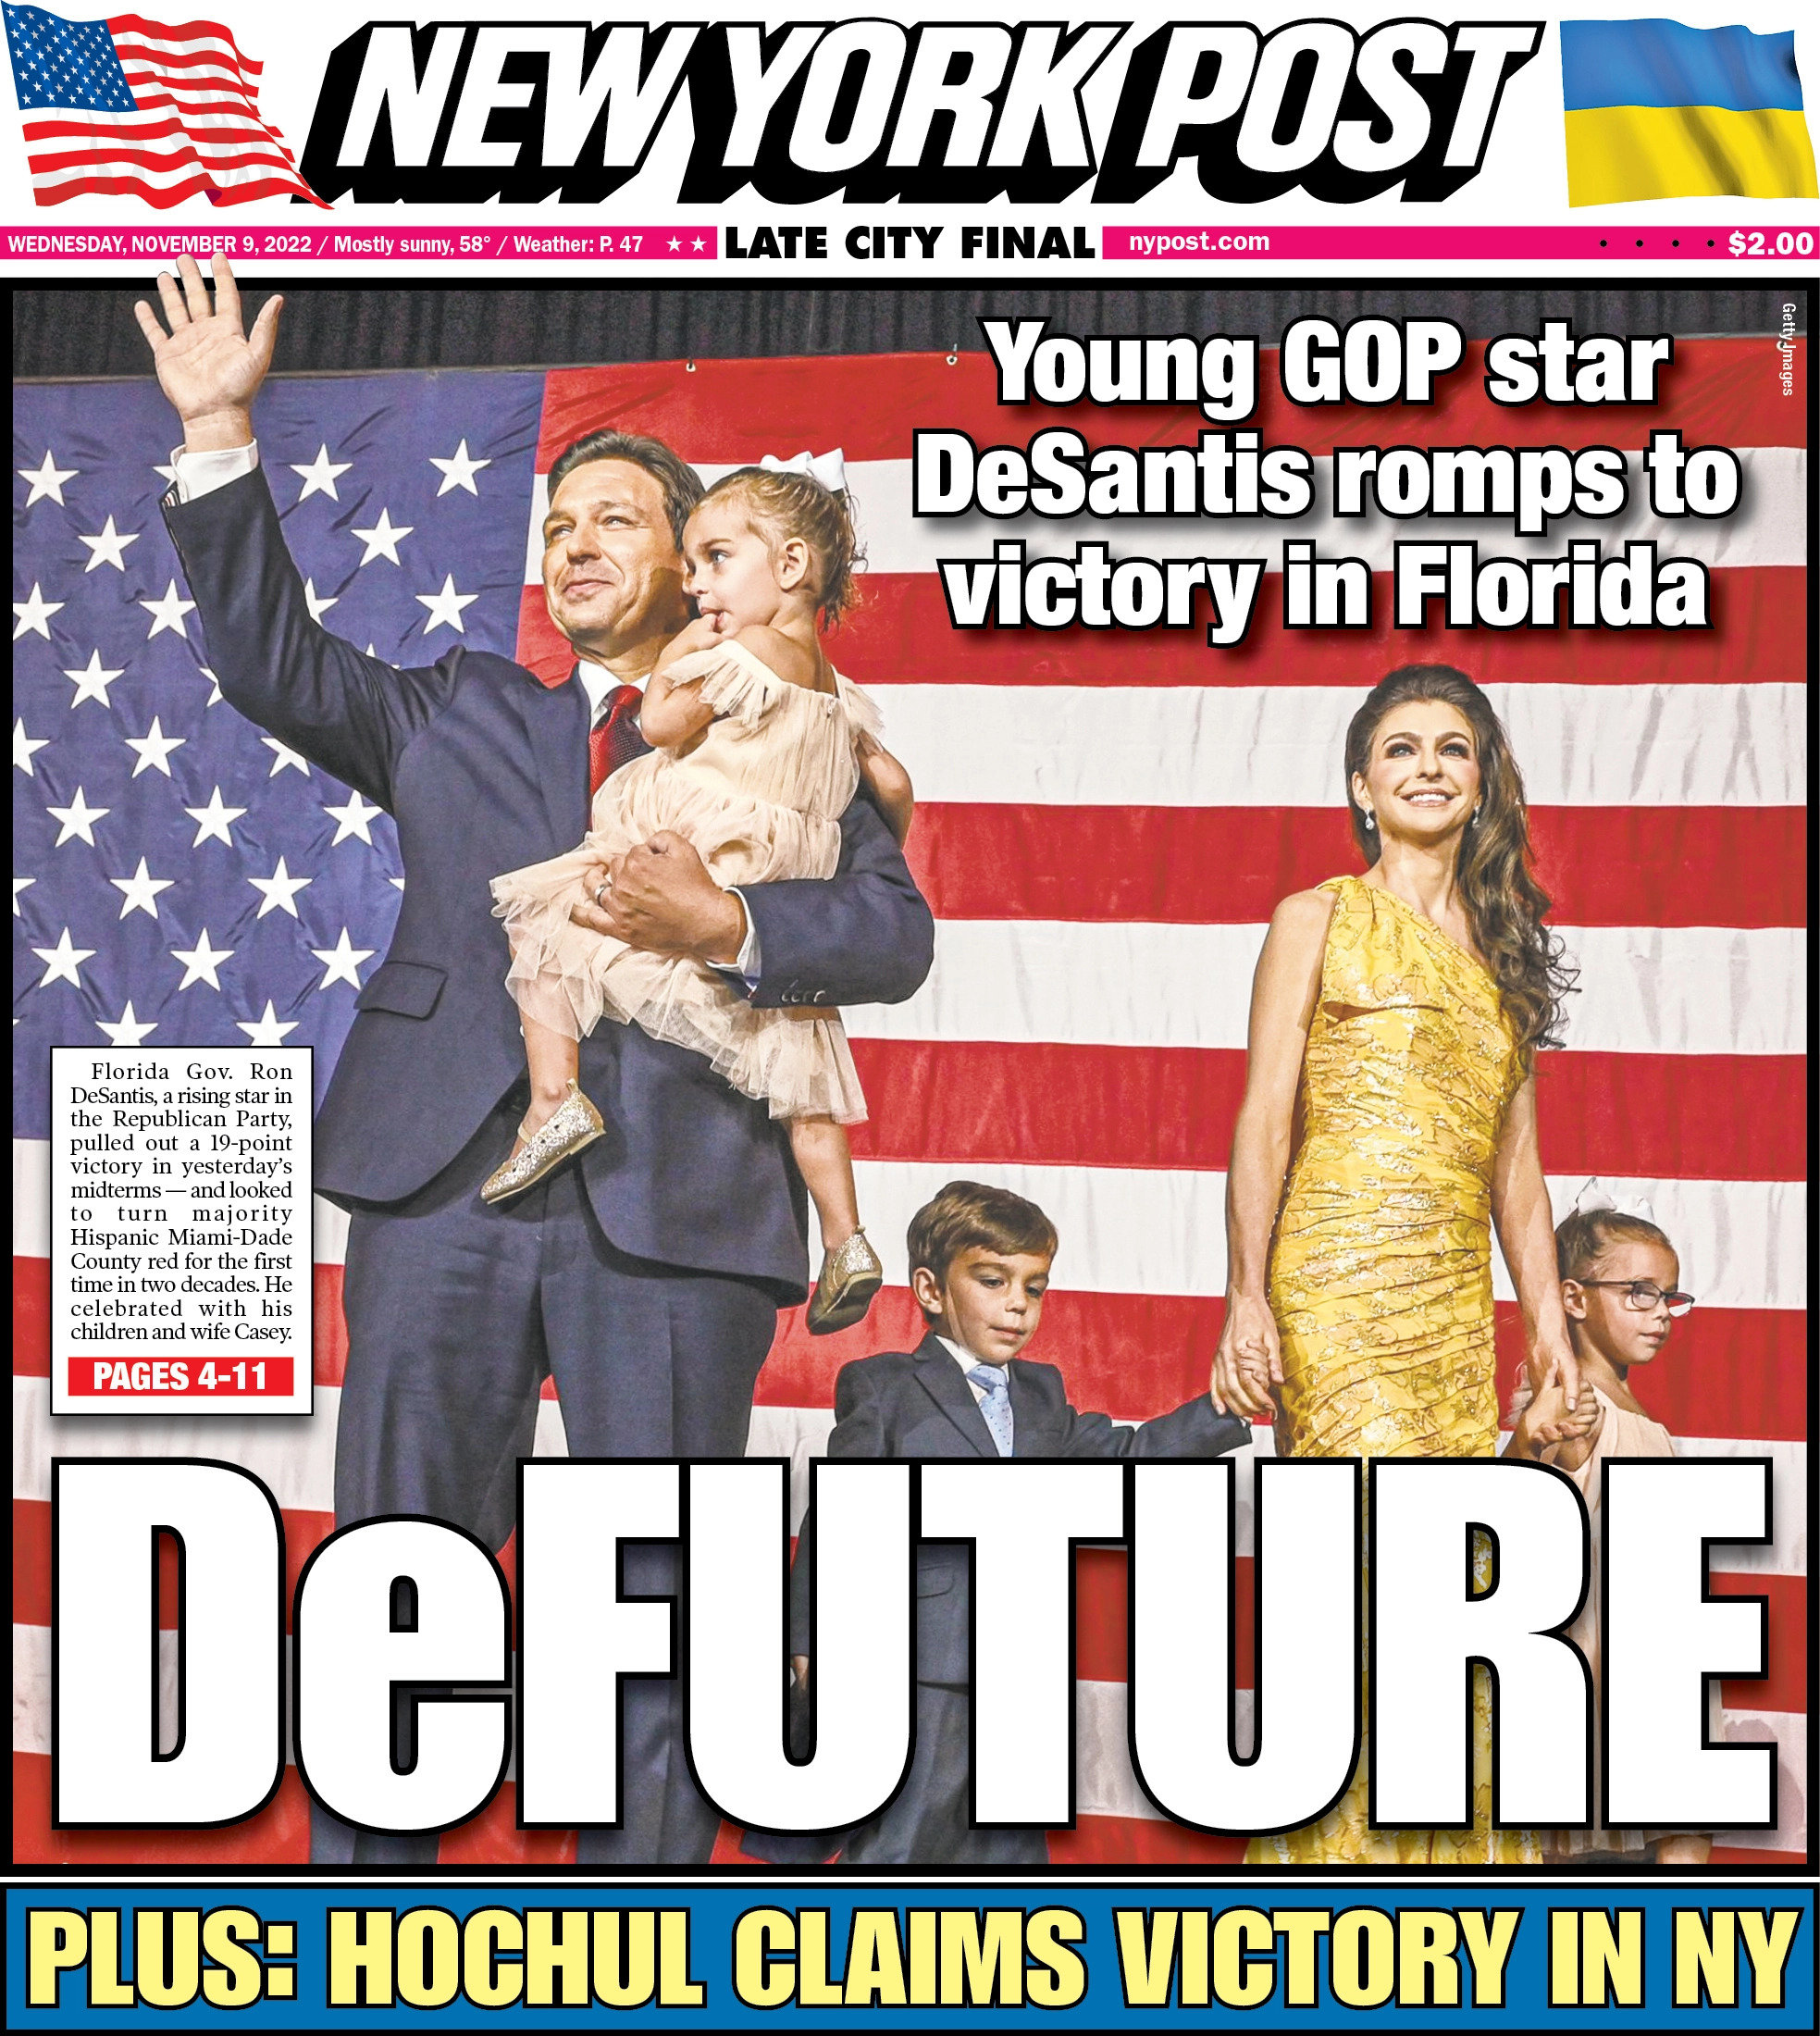 保守派媒体《纽约邮报》在头版形容德桑蒂斯为“德未来”（DeFuture）